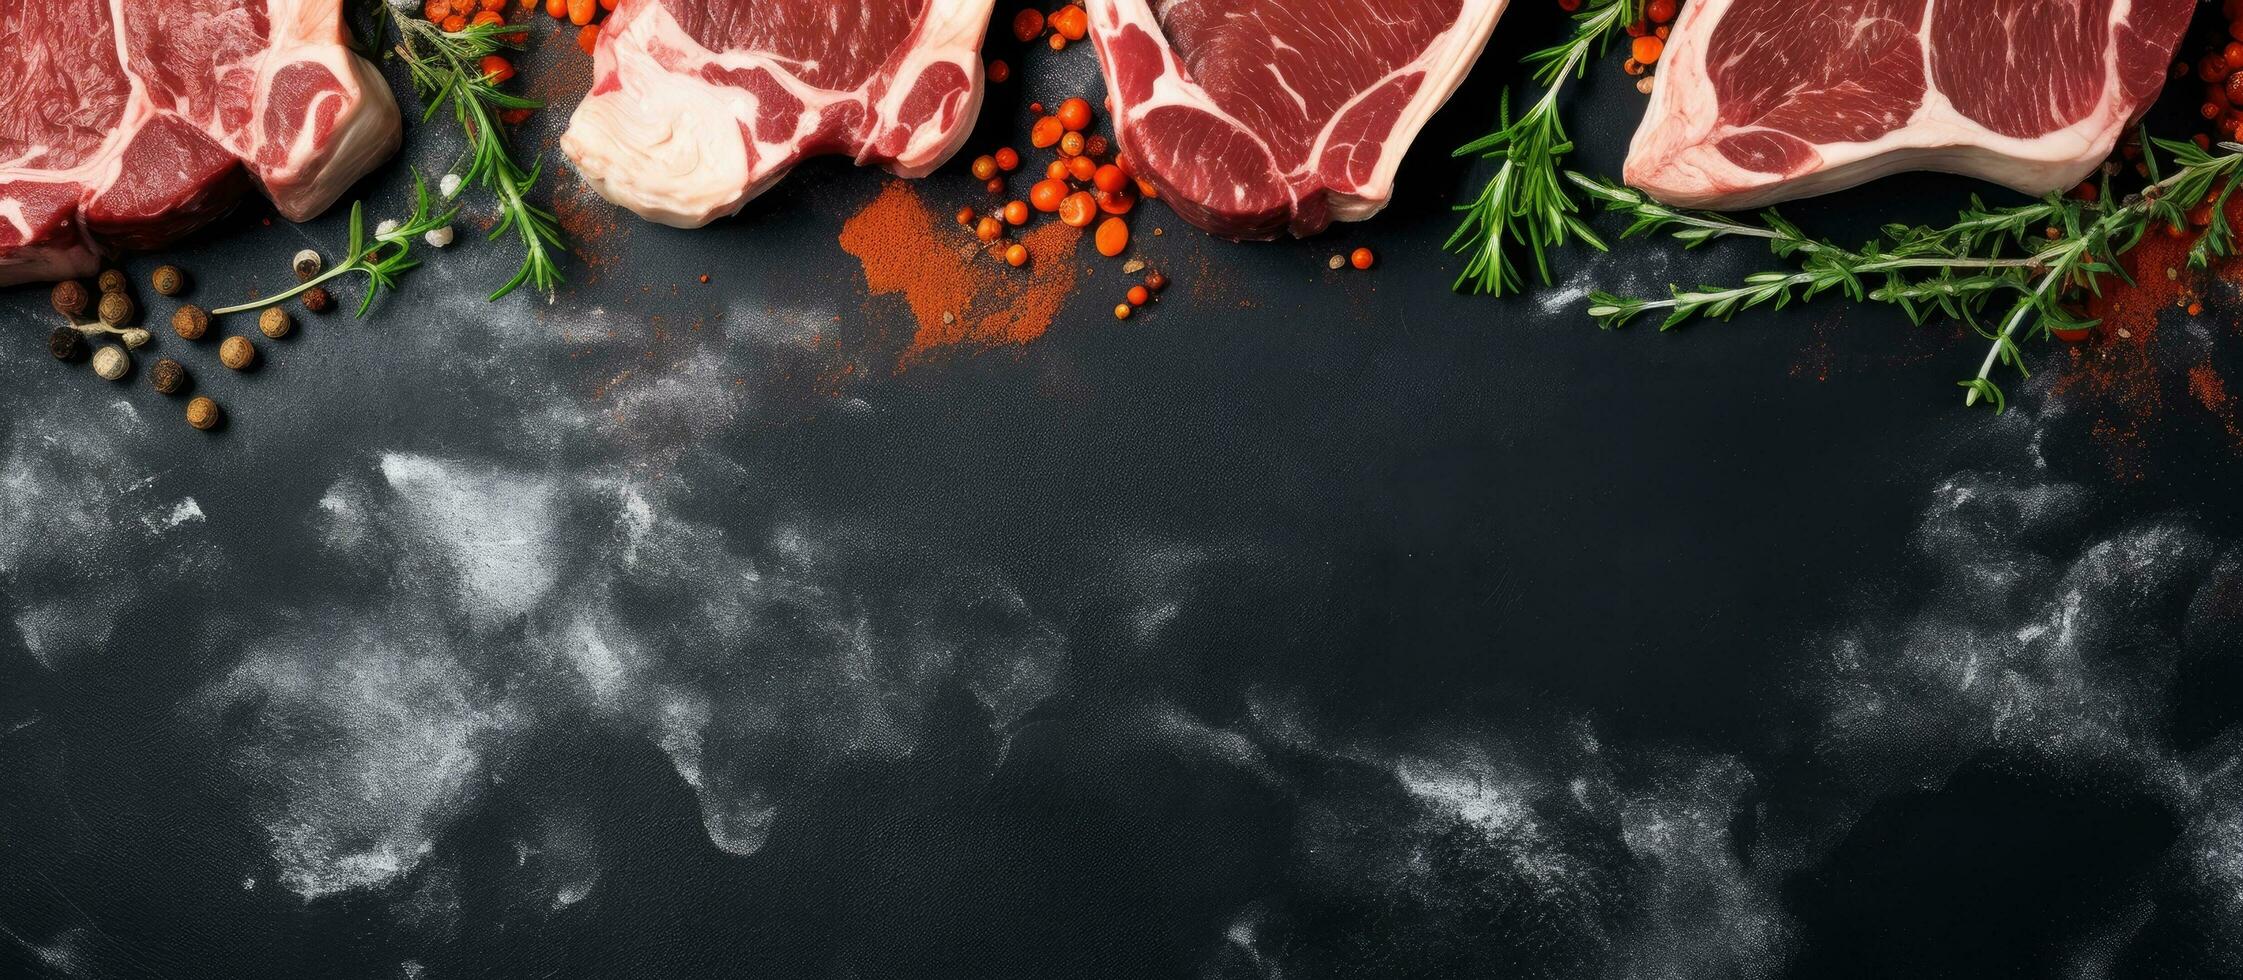 Foto av rå kött med kryddor och örter på en svart bakgrund med kopia Plats